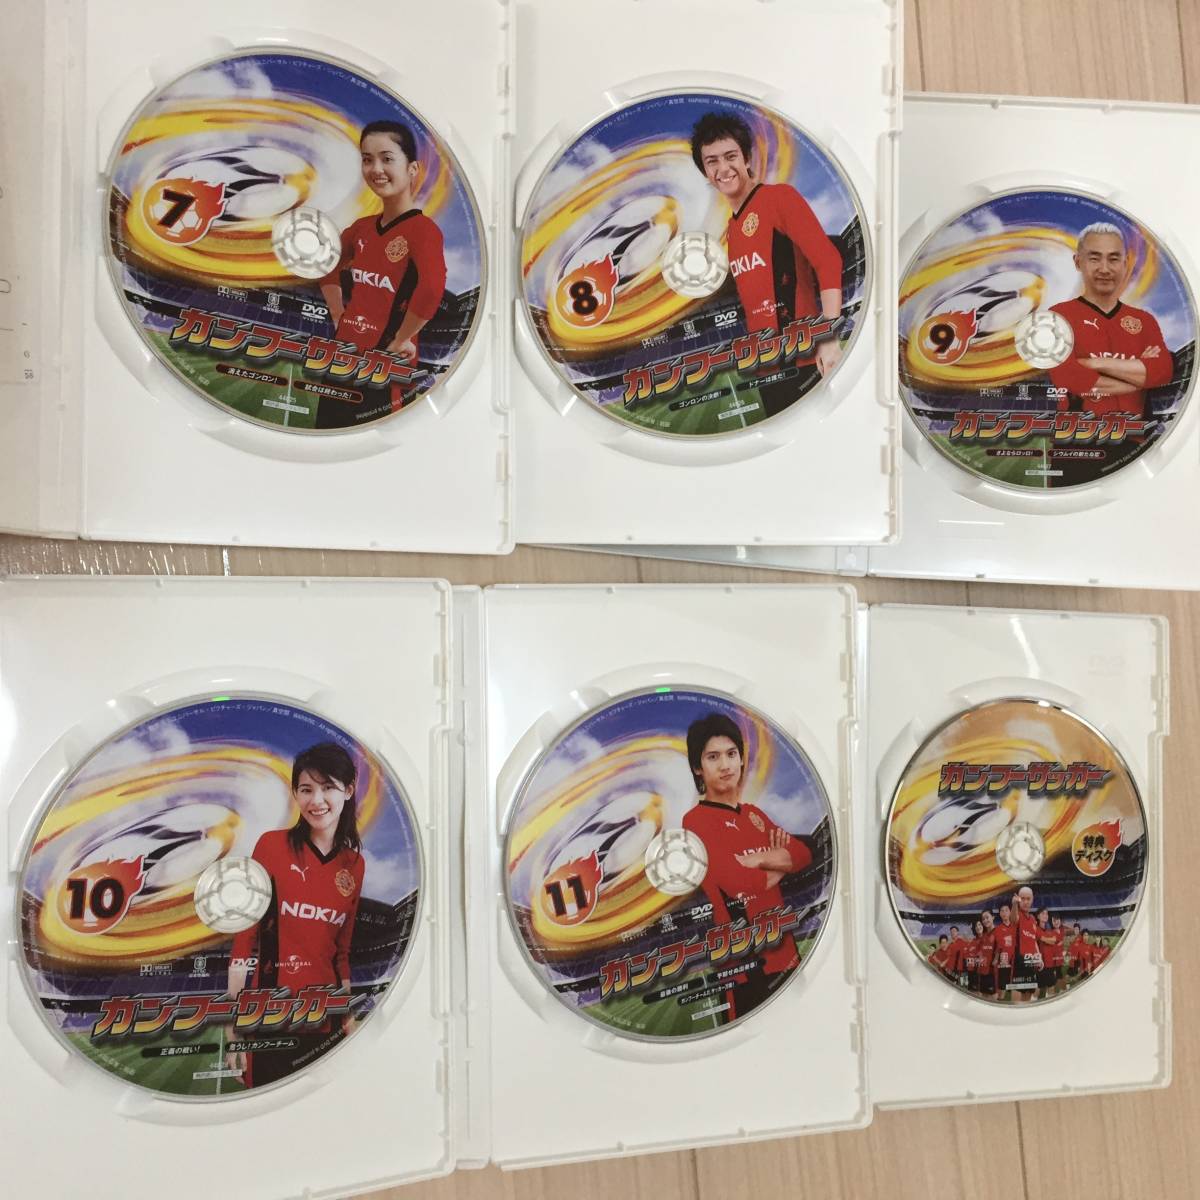 カンフーサッカー DVD-BOX Vol.2〈6枚組〉★特典ディスク付★攻夫足球